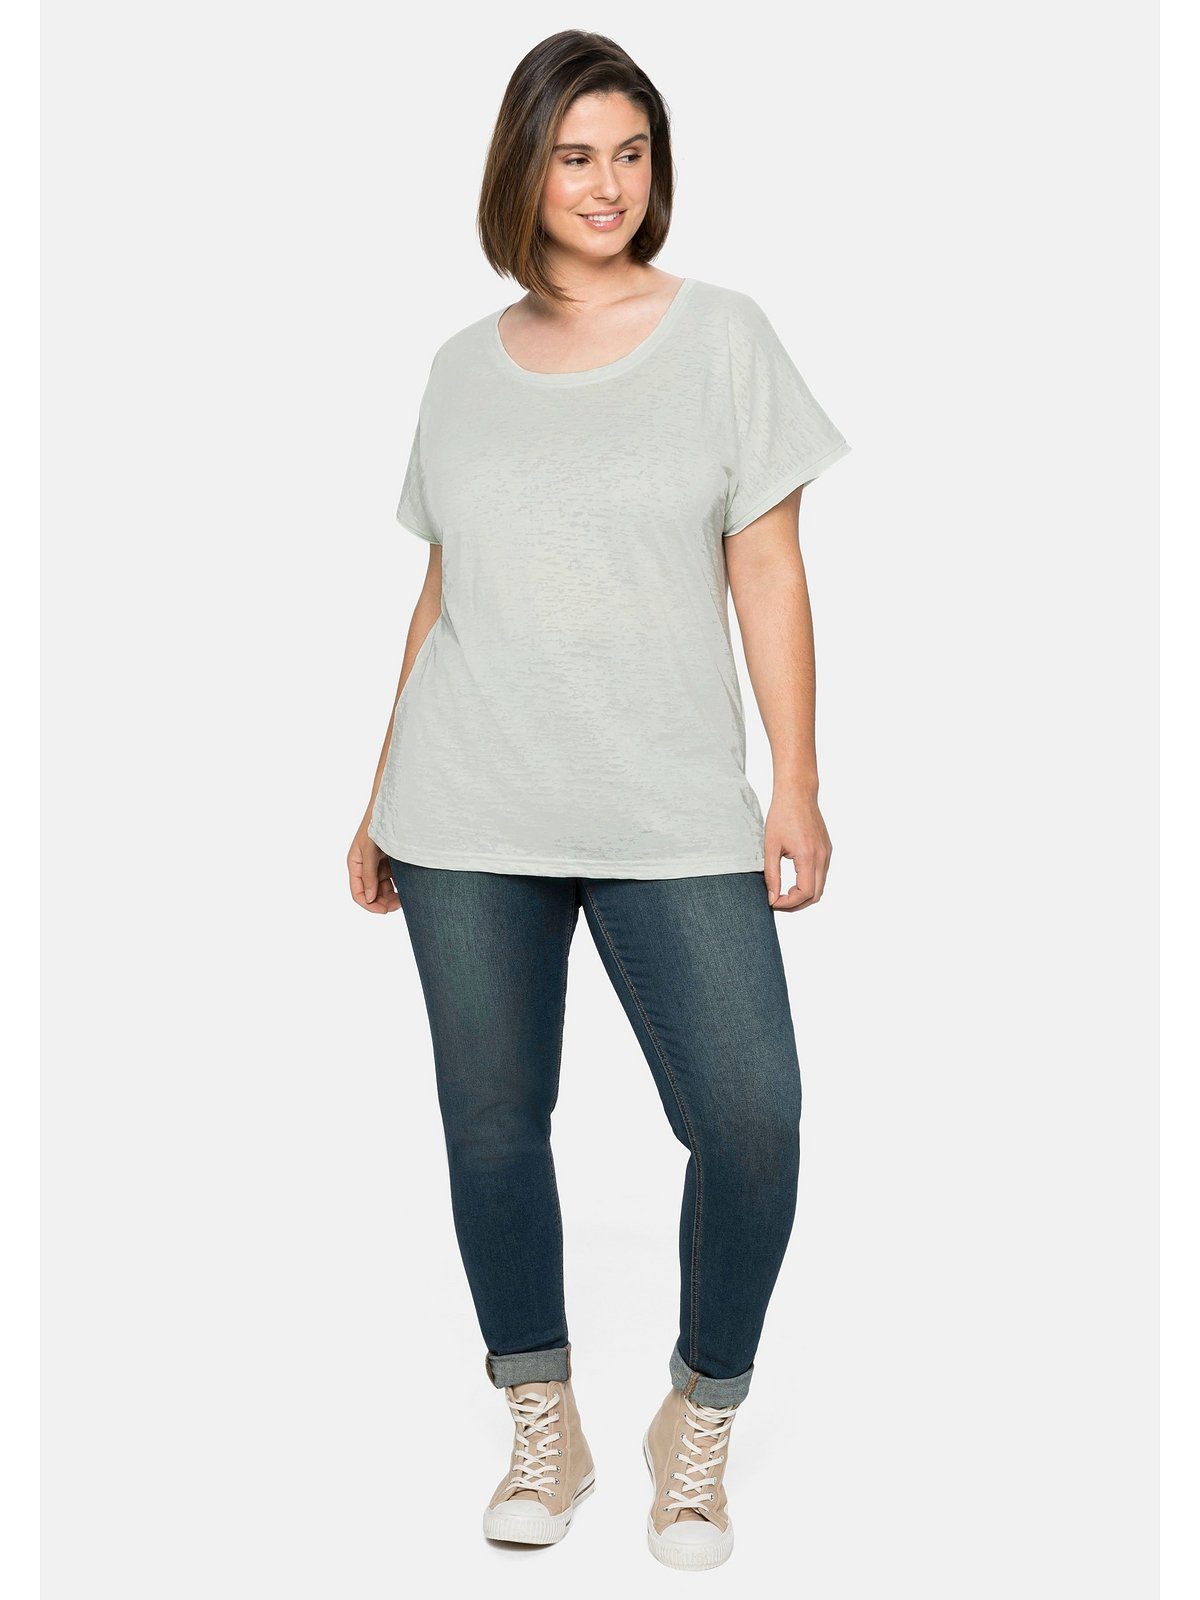 T-Shirt blassaqua Große Sheego leicht transparent Ausbrennermuster, Größen mit